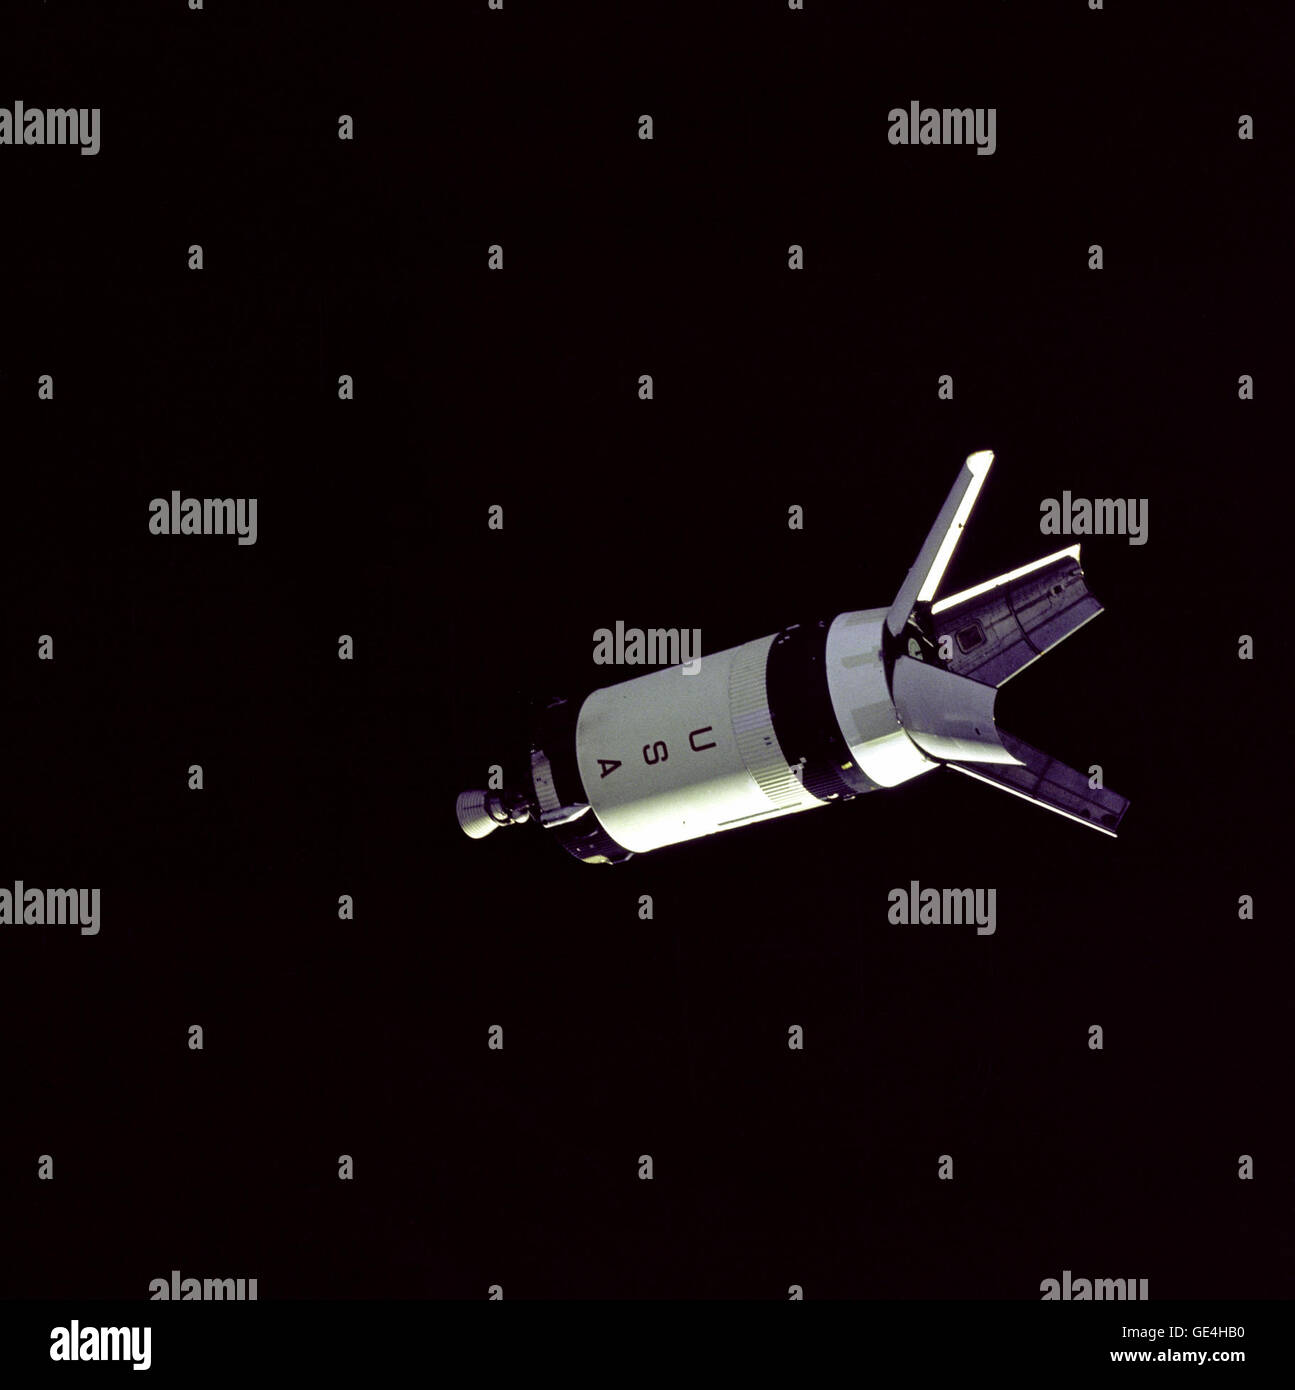 (11 octobre 1968), joint à la Saturn IV-B, l'adaptateur du module lunaire quatre écrans sont rentrés à la position complètement ouverte. C'est là que le module lunaire (LM) est mémorisé pendant le lancement. Dans le cadre de missions nécessitant l'utilisation d'un LM, les quatre panneaux serait rétracté et larguée avant de rendez-vous et d'amarrage. Cette photo a été prise au cours de la mission Apollo 7, lorsqu'aucun module lunaire a été adoptée. La SIV-B a volé comme l'étape de la deuxième étape sur une fusée Saturn IB. Il est aussi utilisé comme la troisième étape sur le Saturne V. La mission Apollo 7 a été conçu pour tester l'Apollo et le module de commande de service savs Banque D'Images